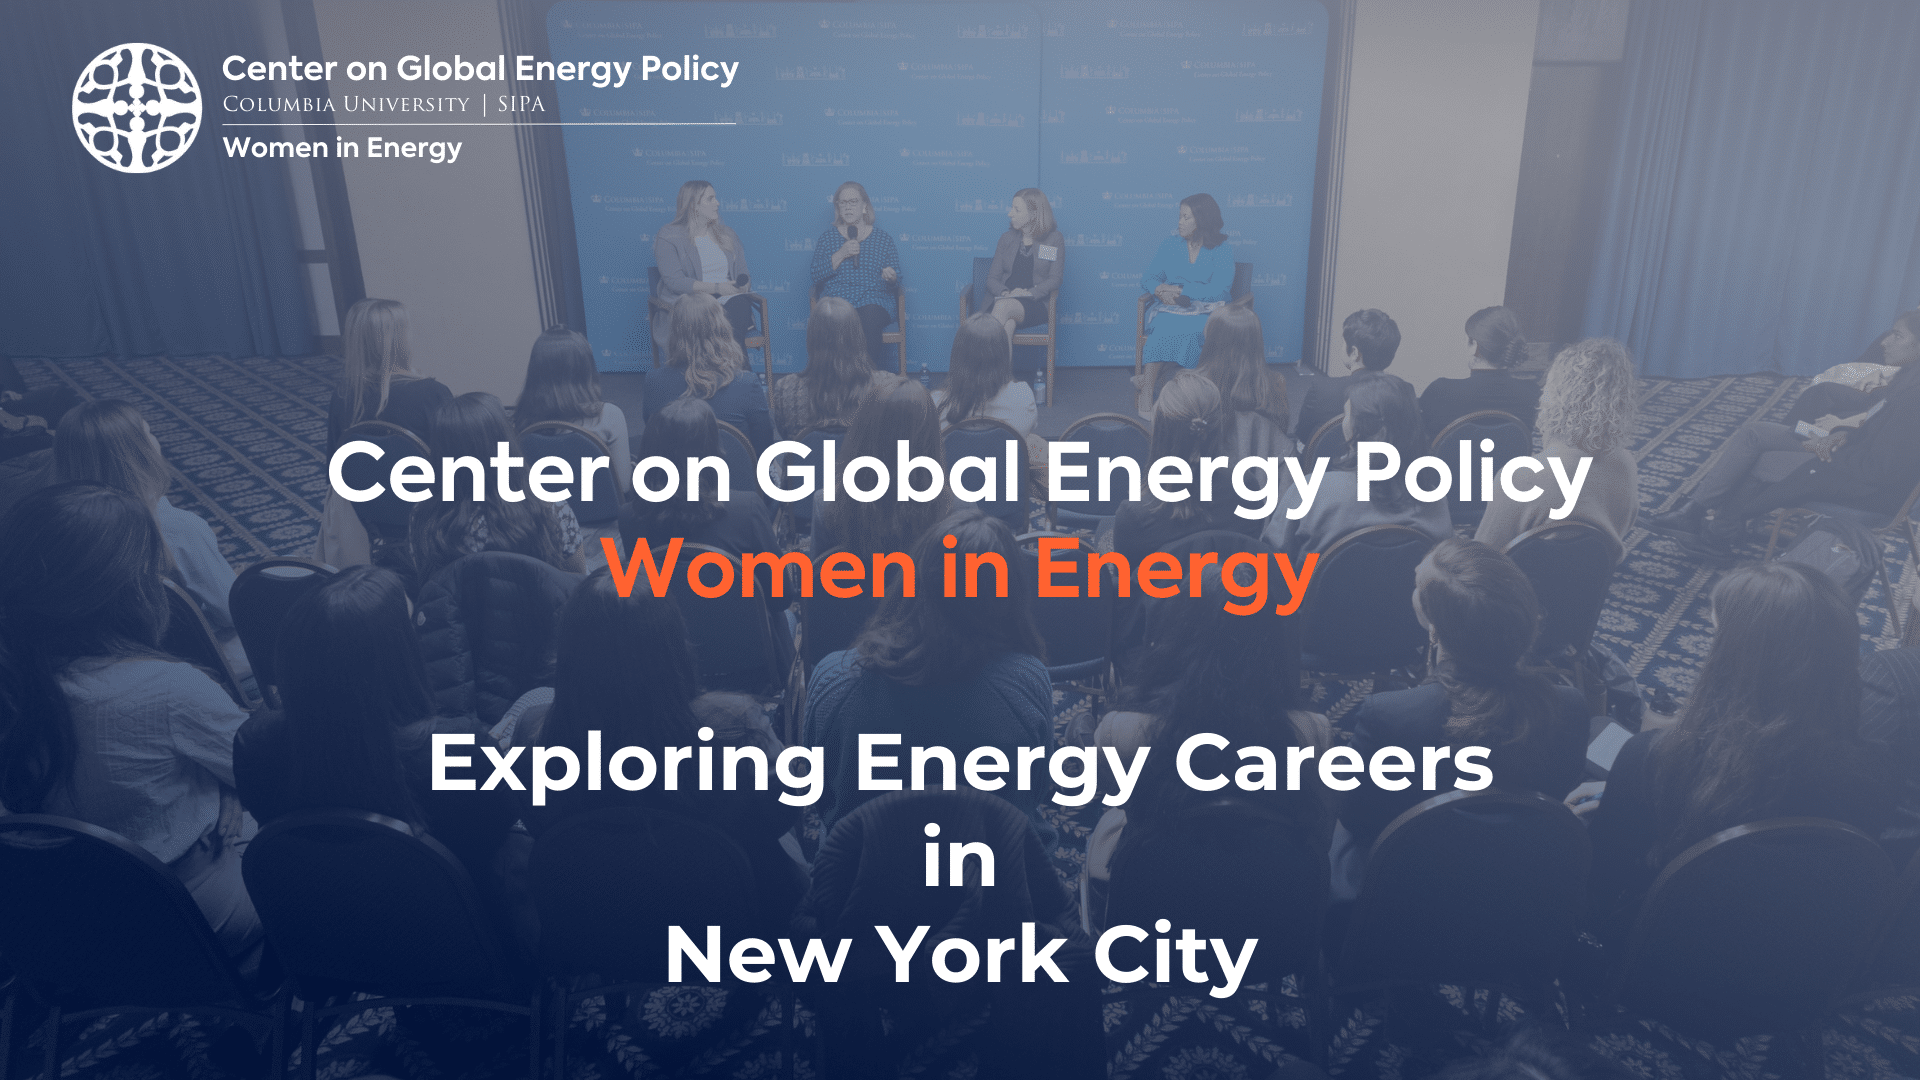 Exploring Energy Careers in NYC